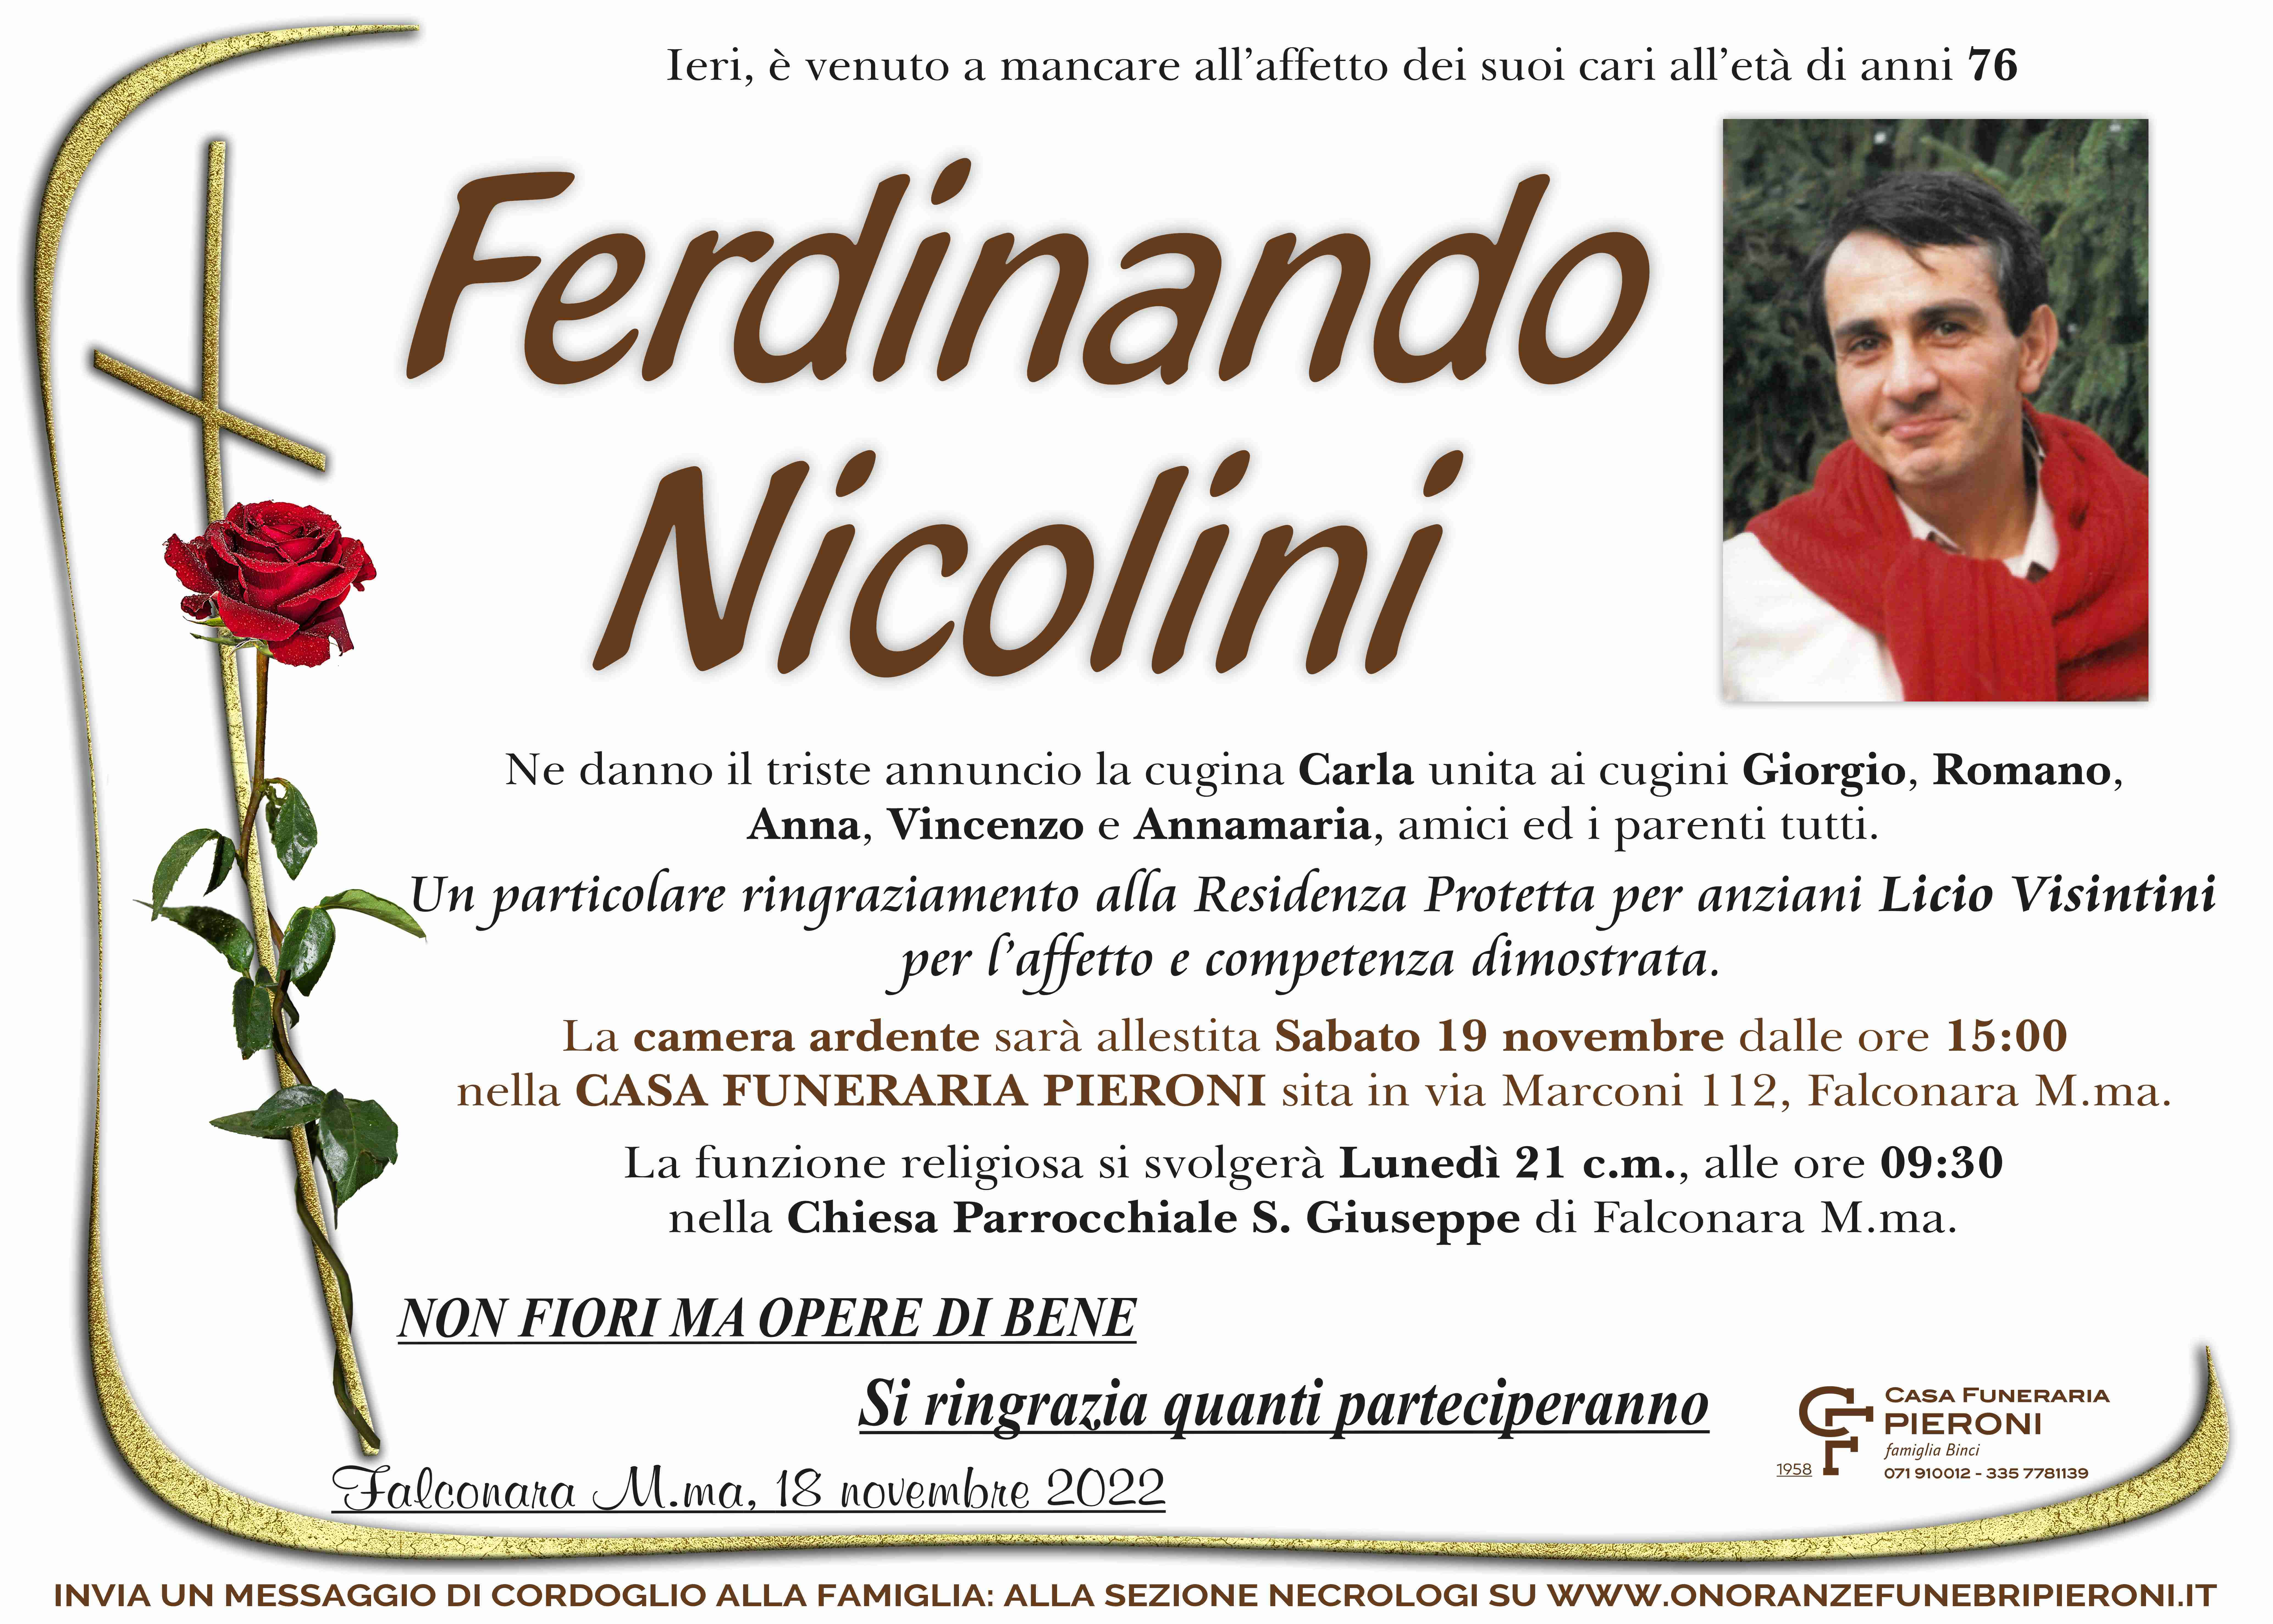 Ferdinando Nicolini